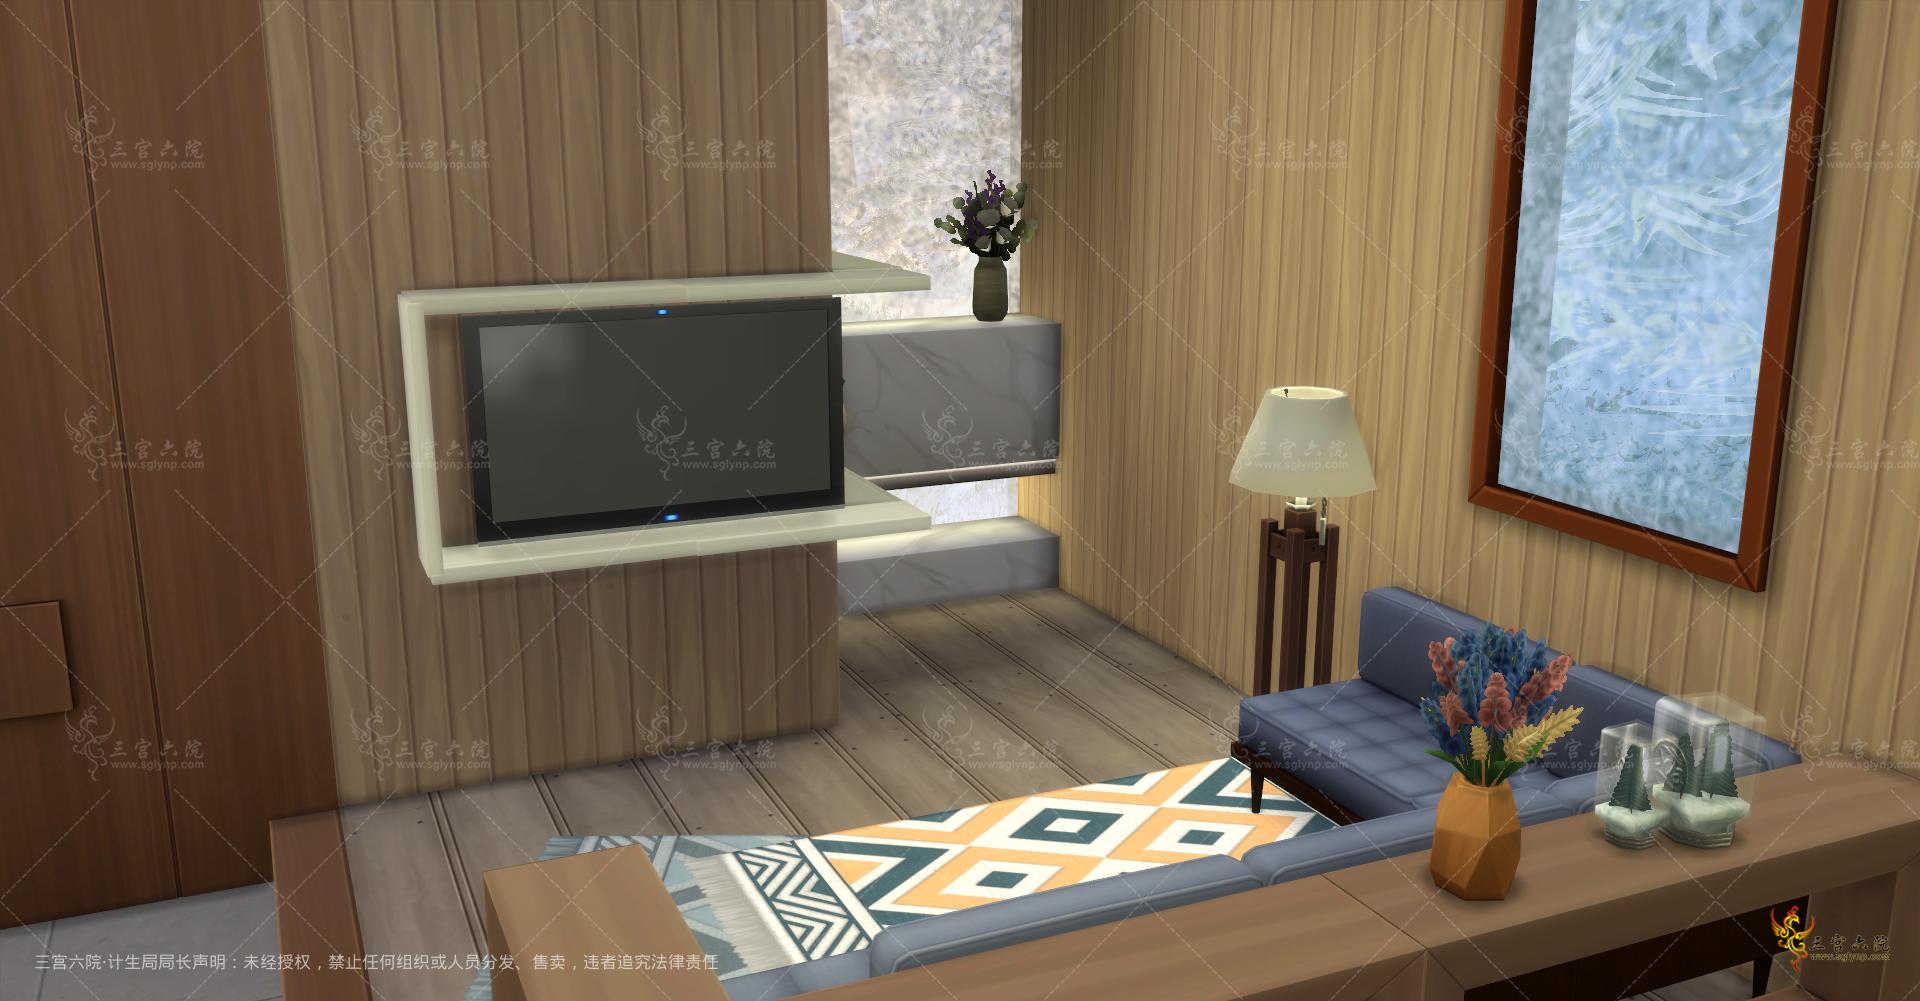 Sims 4 Screenshot 2022.01.01 - 13.12.29.41.png